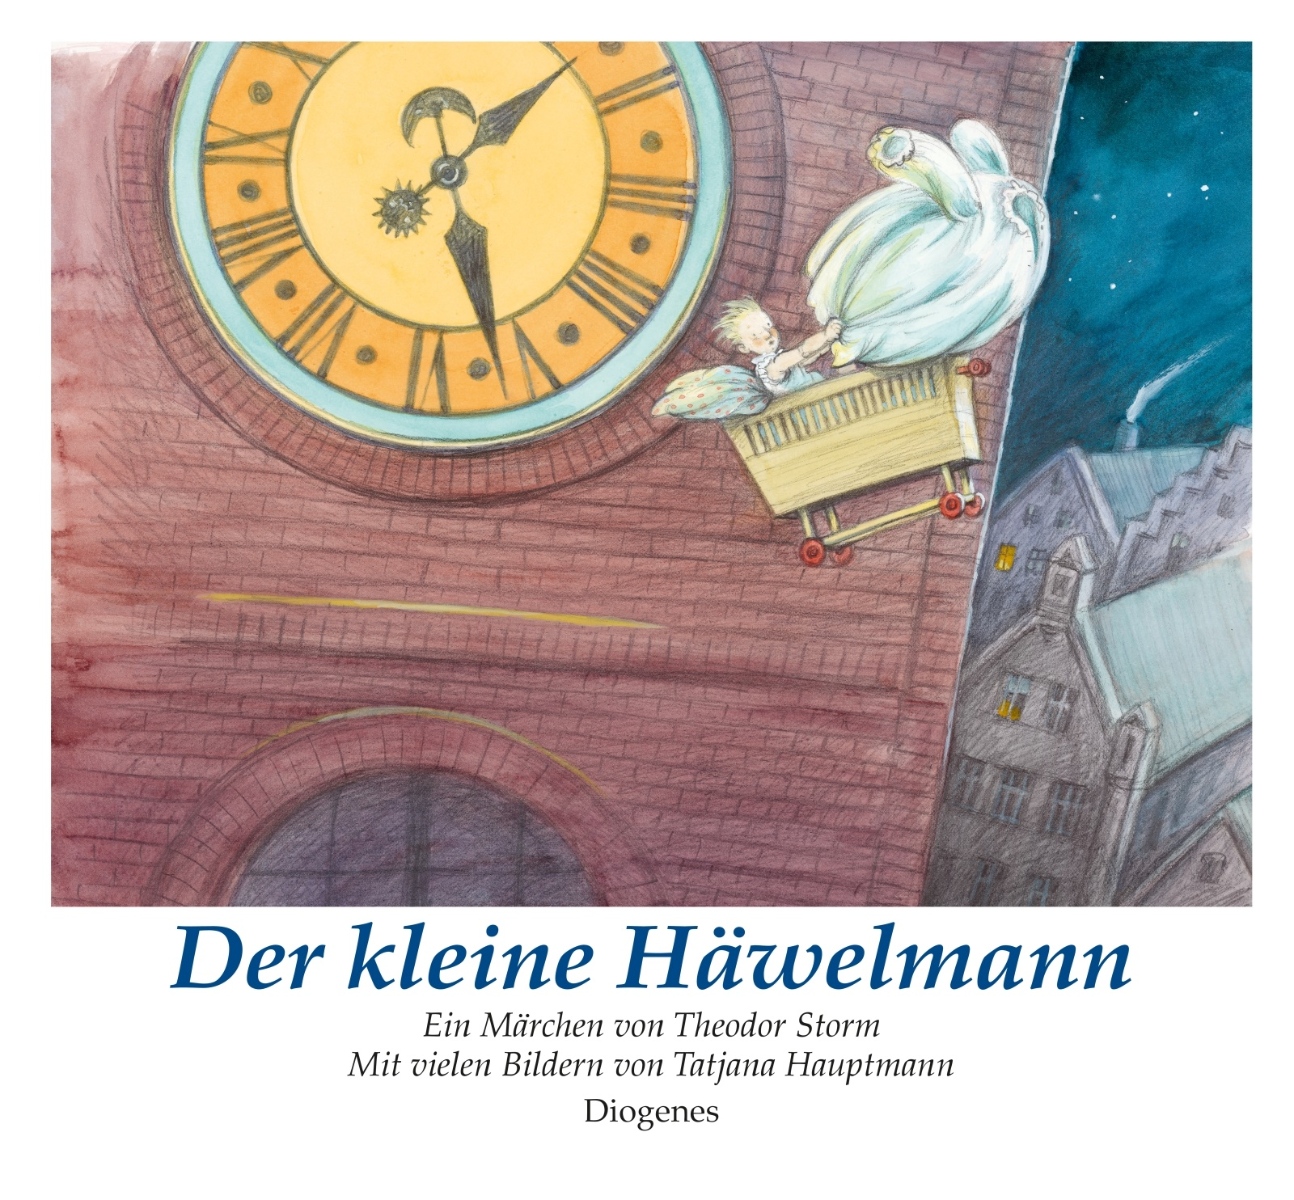 Theodor Storm Der kleine Haewelmann Buchcover Diogenes Verlag